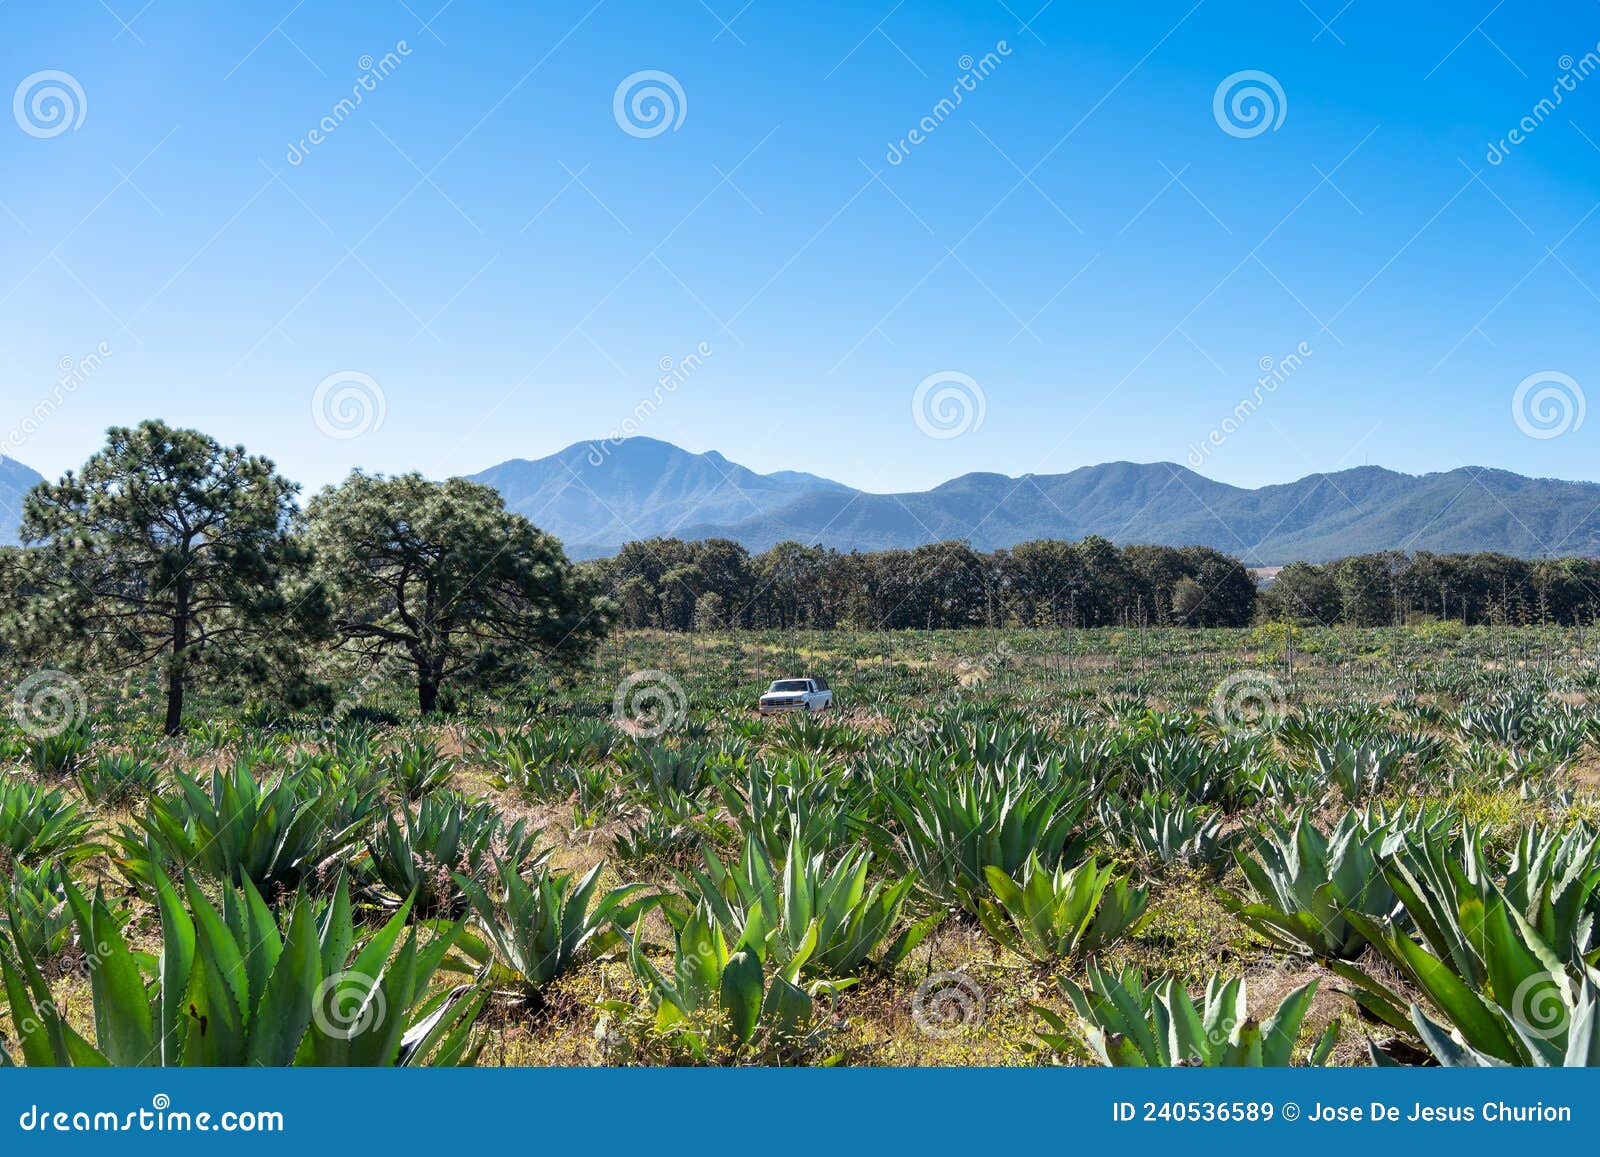 paisaje campo de agaves tipo lechuguilla para hacer las bebidas alcohÃÂ³licas de tequila y raicilla.